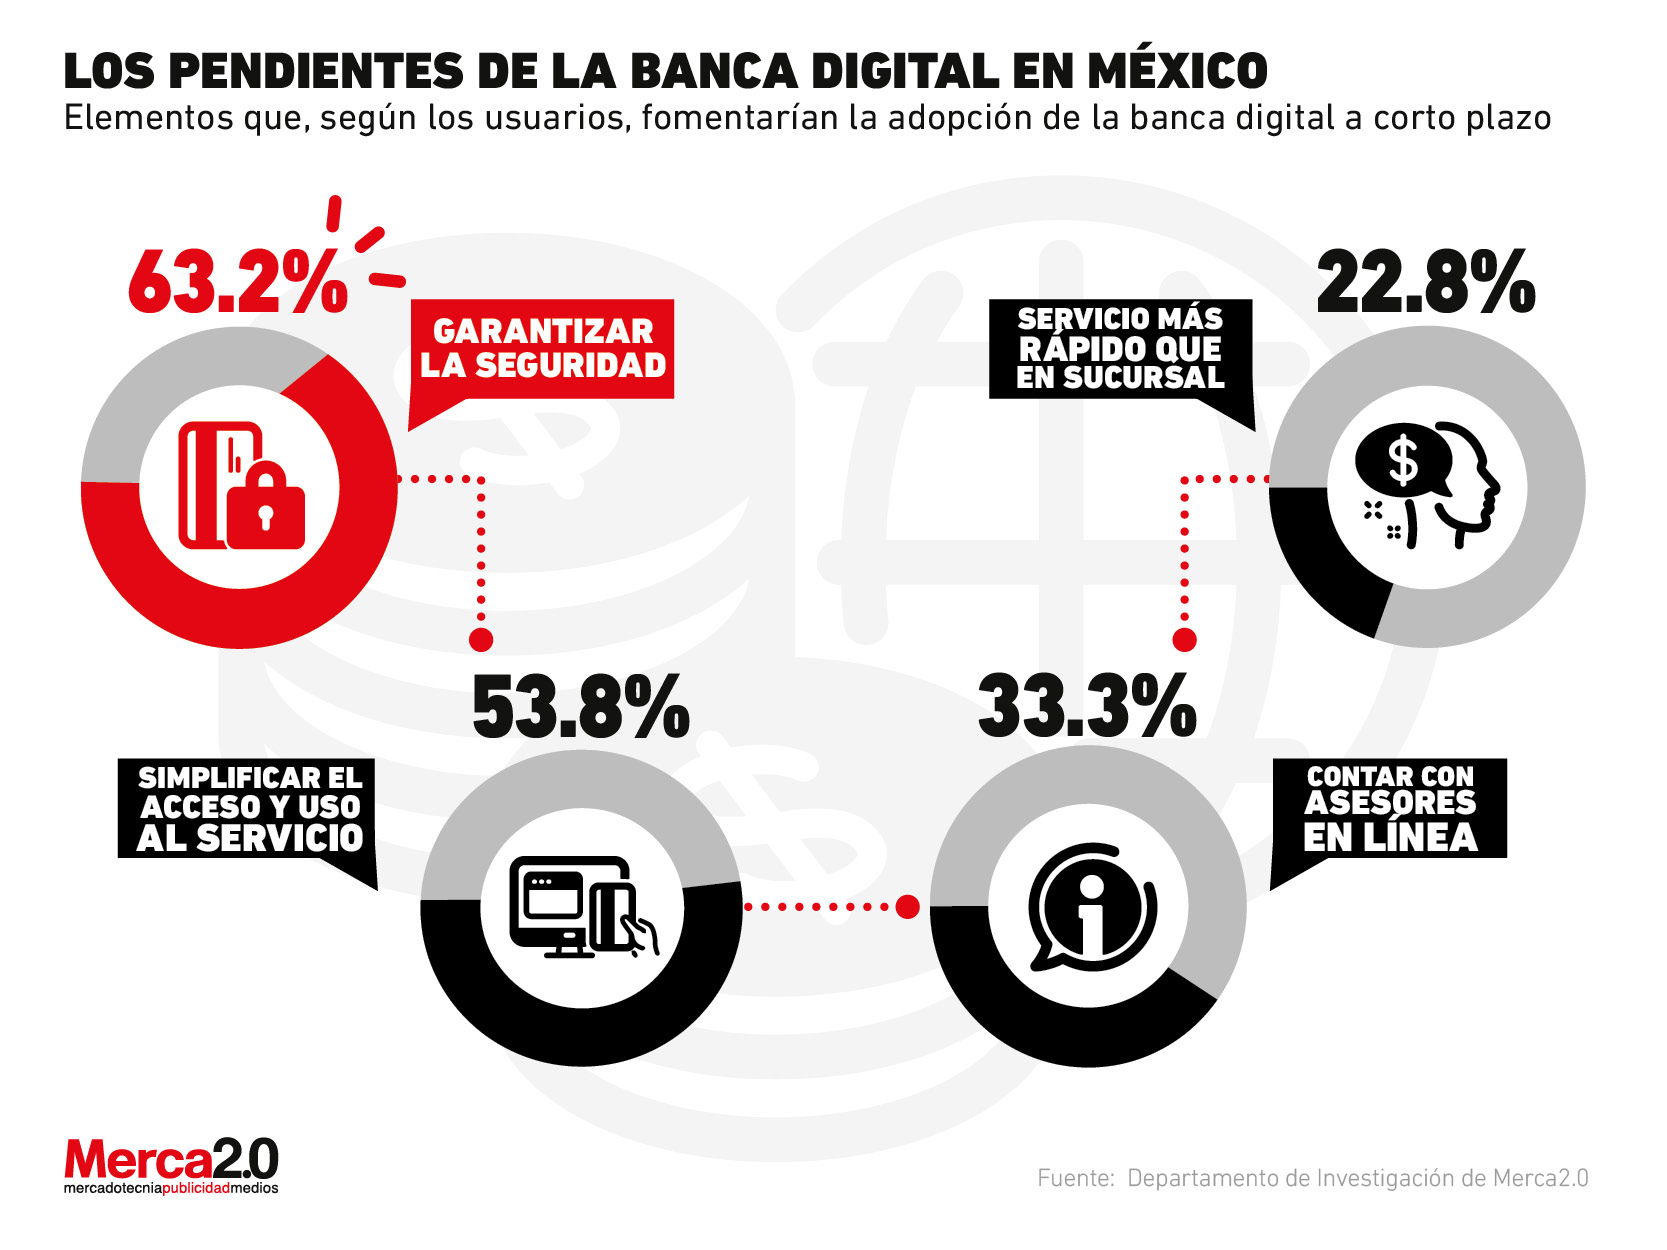 Los retos que debe superar la banca digital para tener más usuarios en México